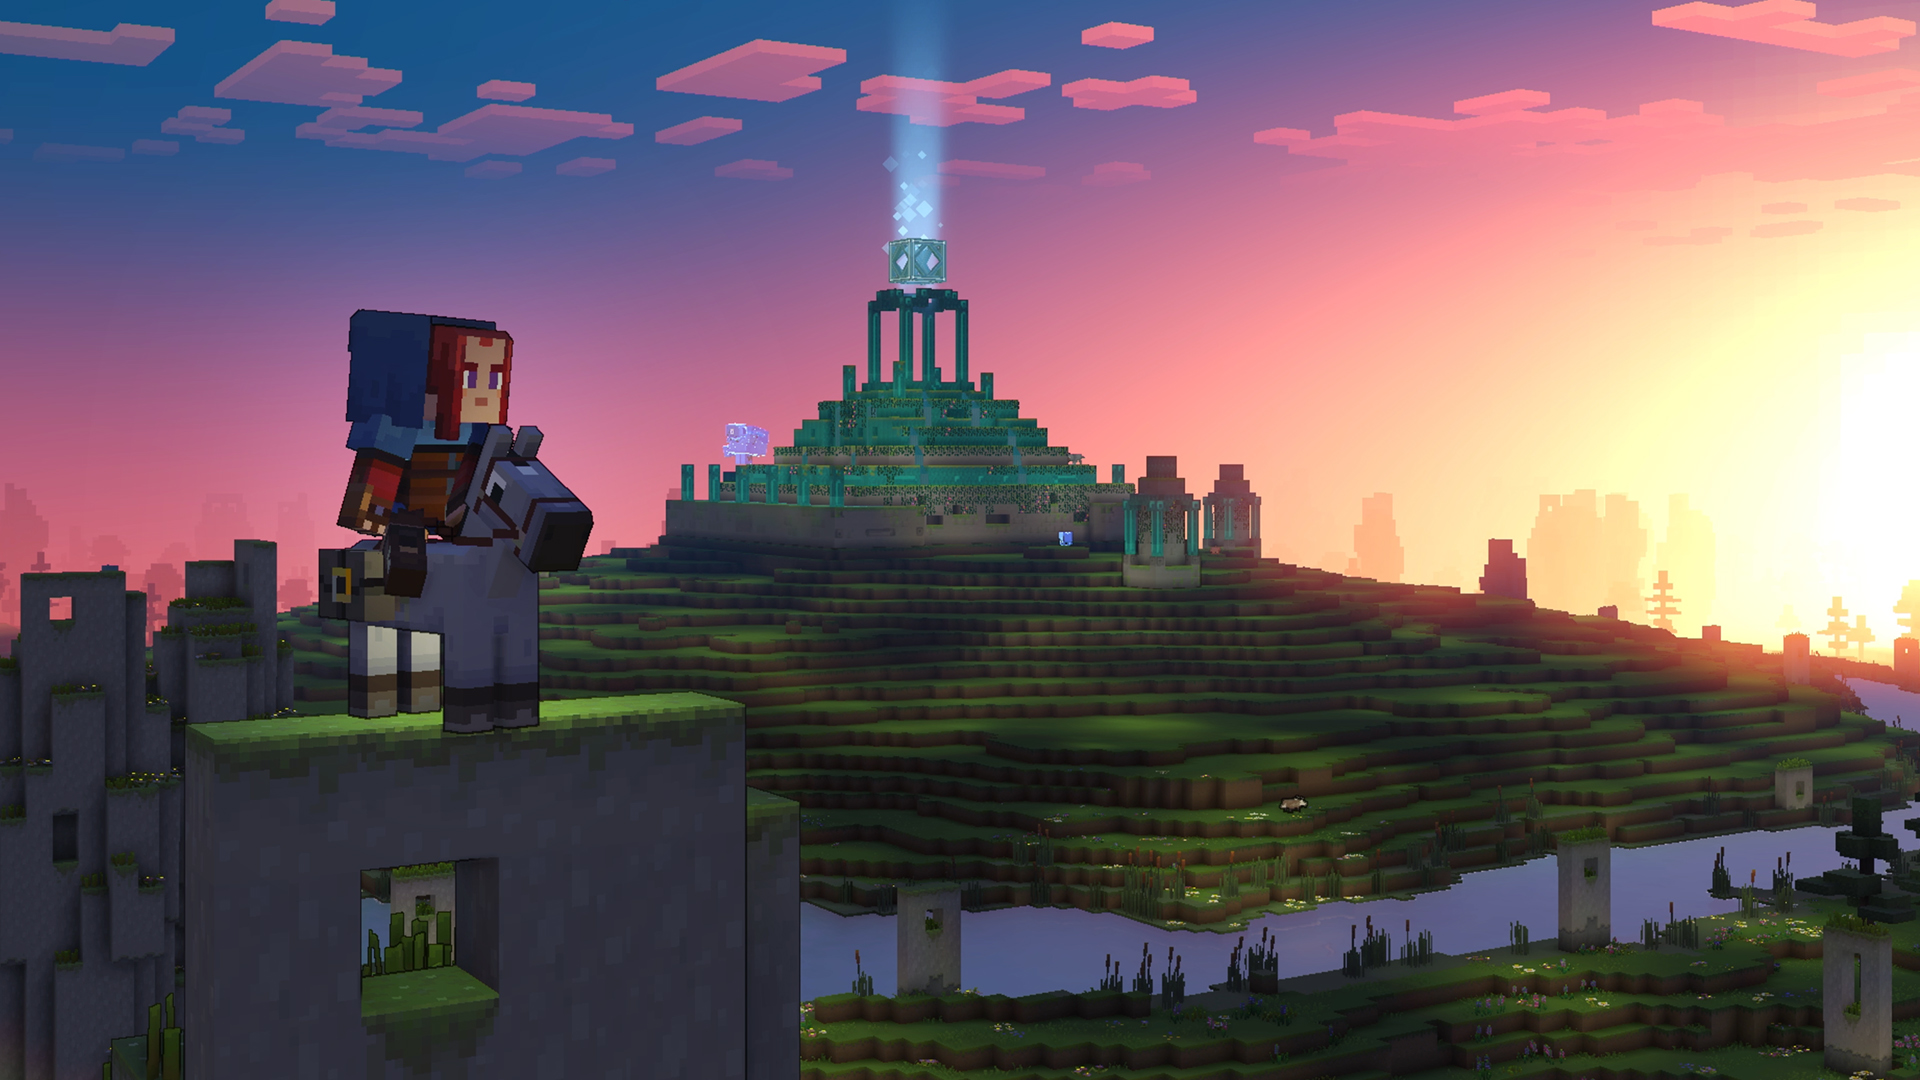 Minecraft Legends já está disponível - Xbox Wire em Português